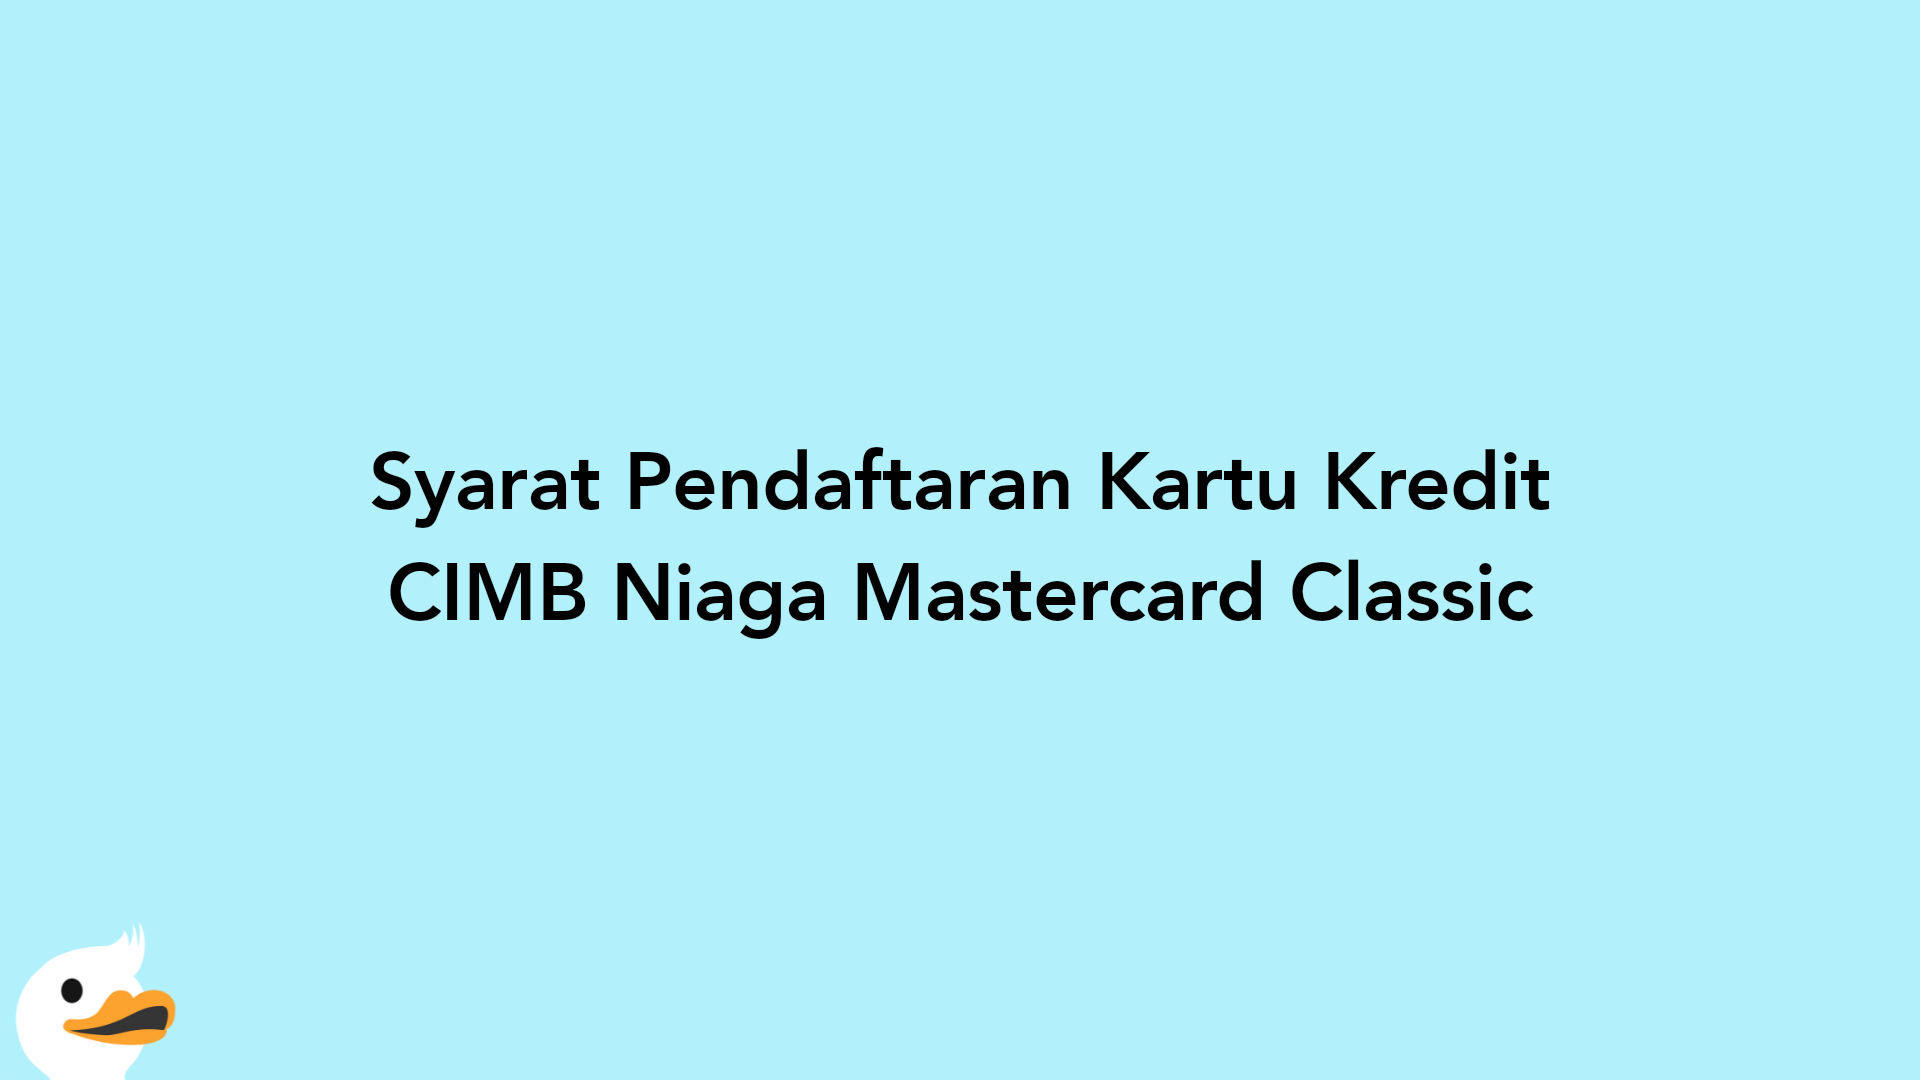 Syarat Pendaftaran Kartu Kredit CIMB Niaga Mastercard Classic